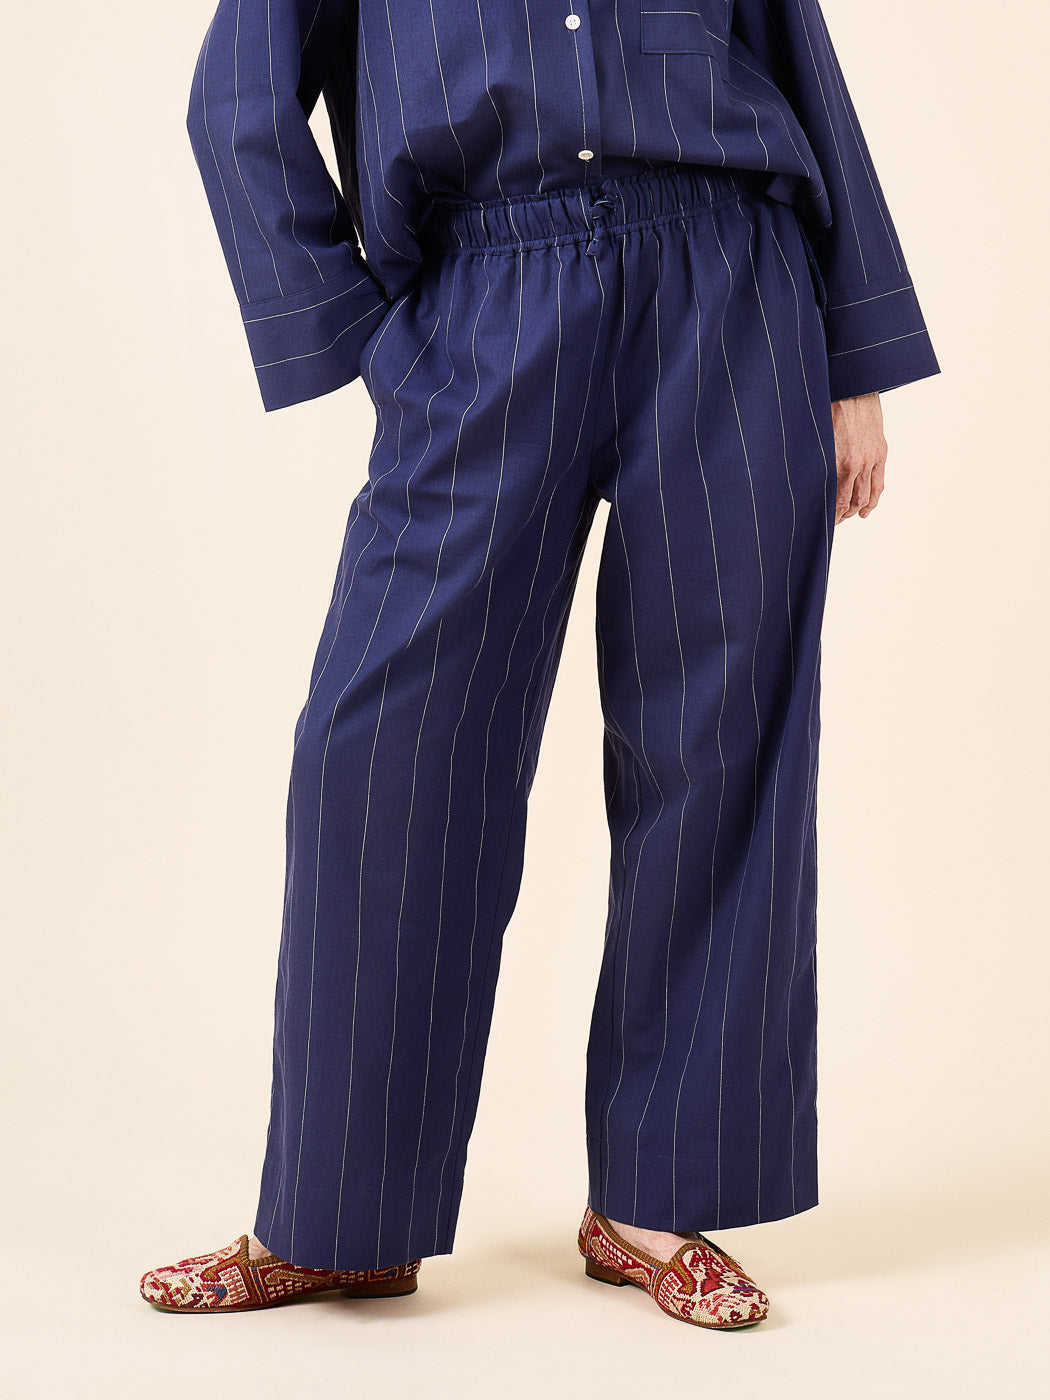 Fran Pajamas | Pajama Bottom  | Closet Core Patterns